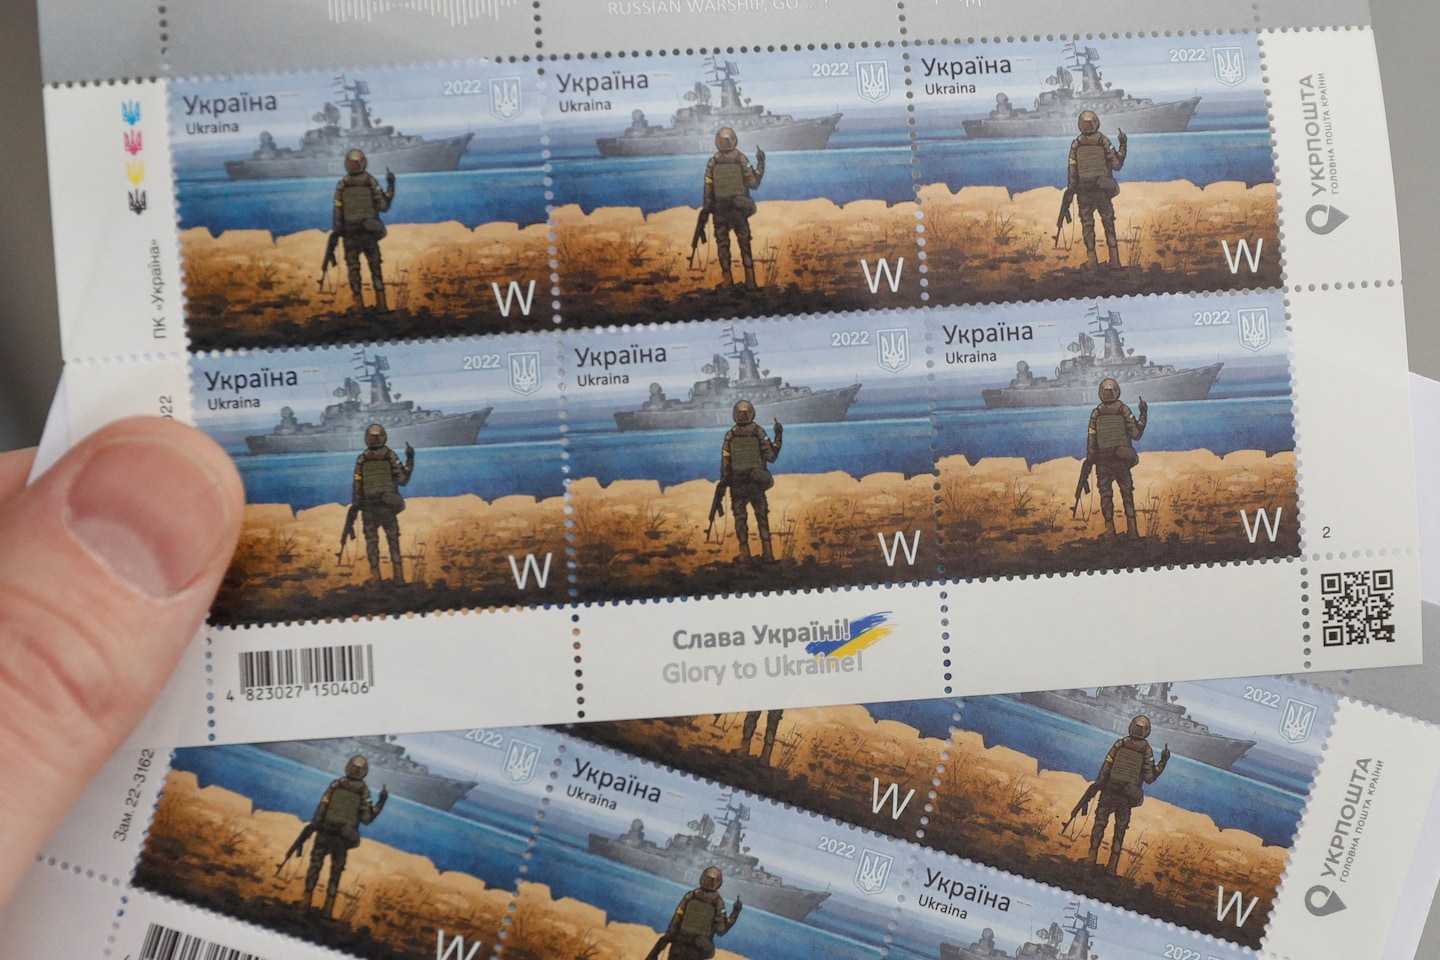 Ukraine stamp celebrates defiance of Moskva, NFT marks Medvedchuk capture - The Washington Post